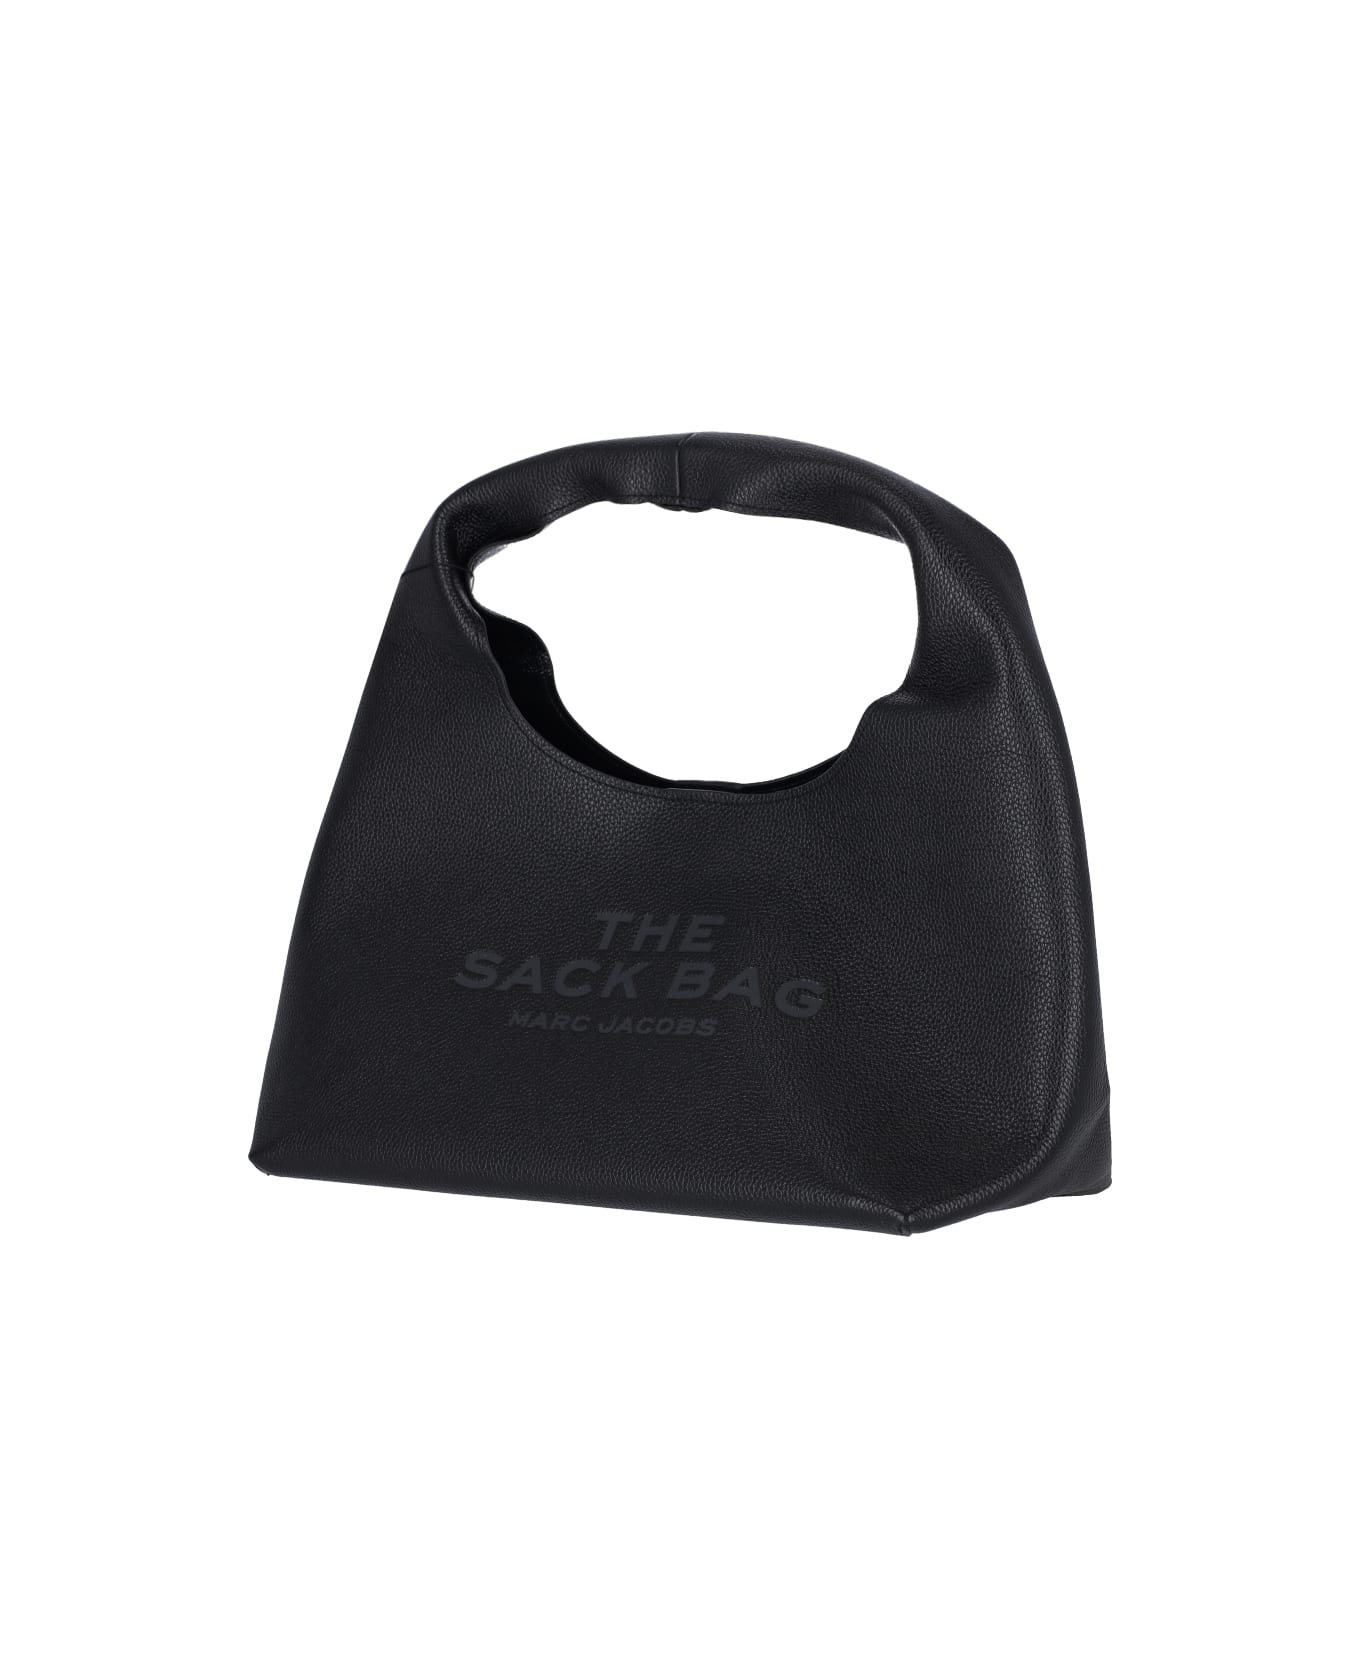 Marc Jacobs 'sack' Black Leather Bag - Black